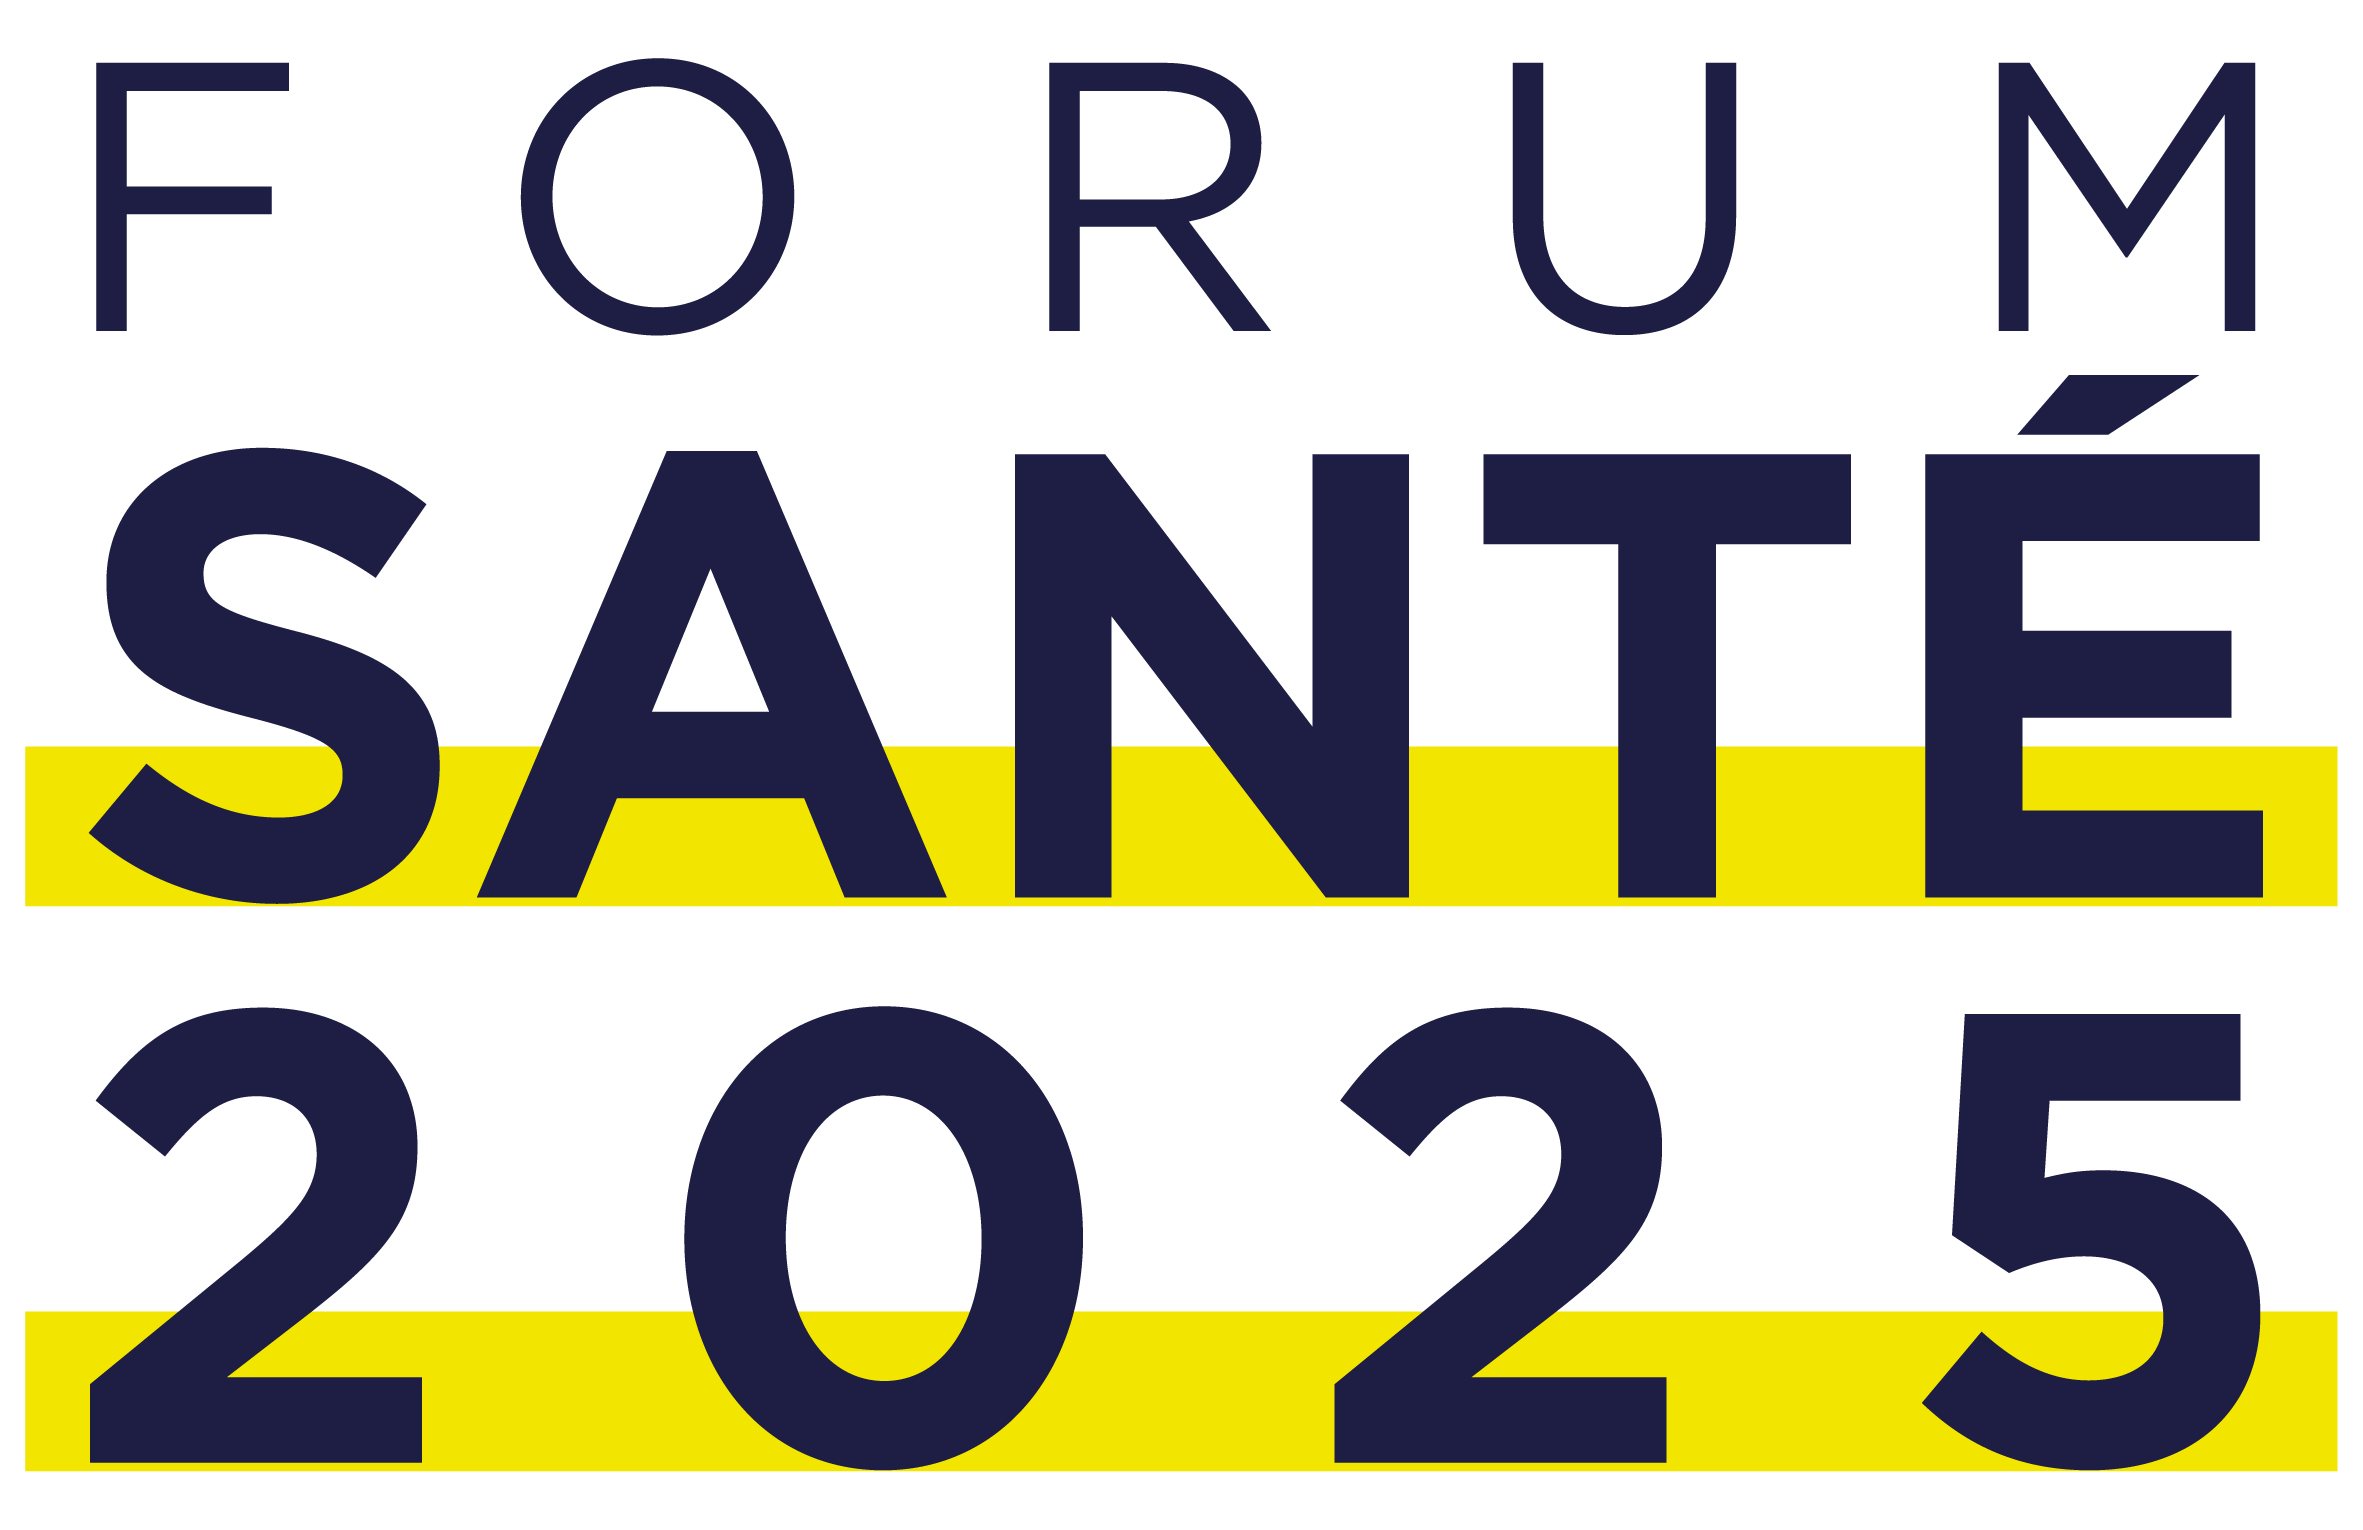 Forum Santé 2025 - 3e édition